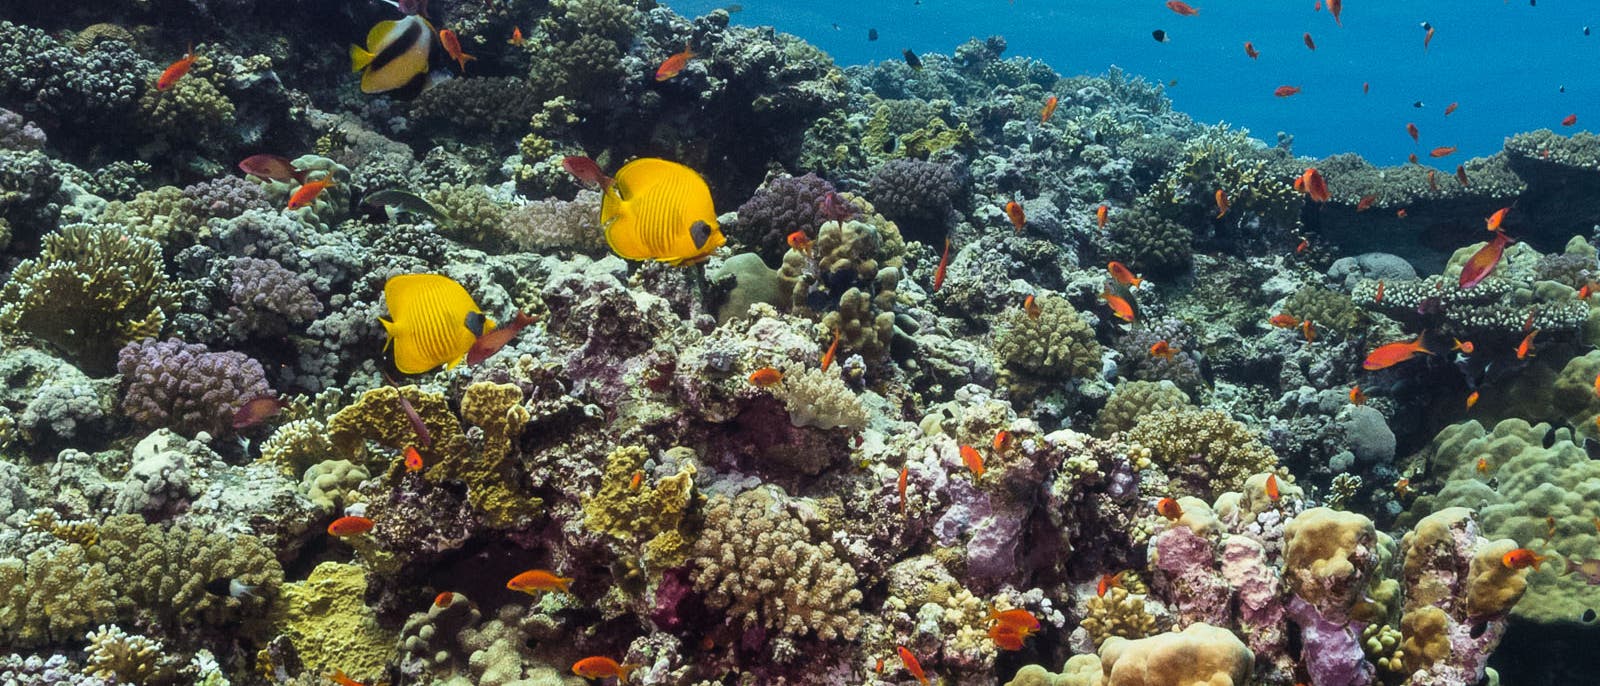 Ägyptische Rotmeerküste 2017: Im Jahr nach dem starken El Niño zeigt das Riff keine Anzeichen einer Korallenbleiche.